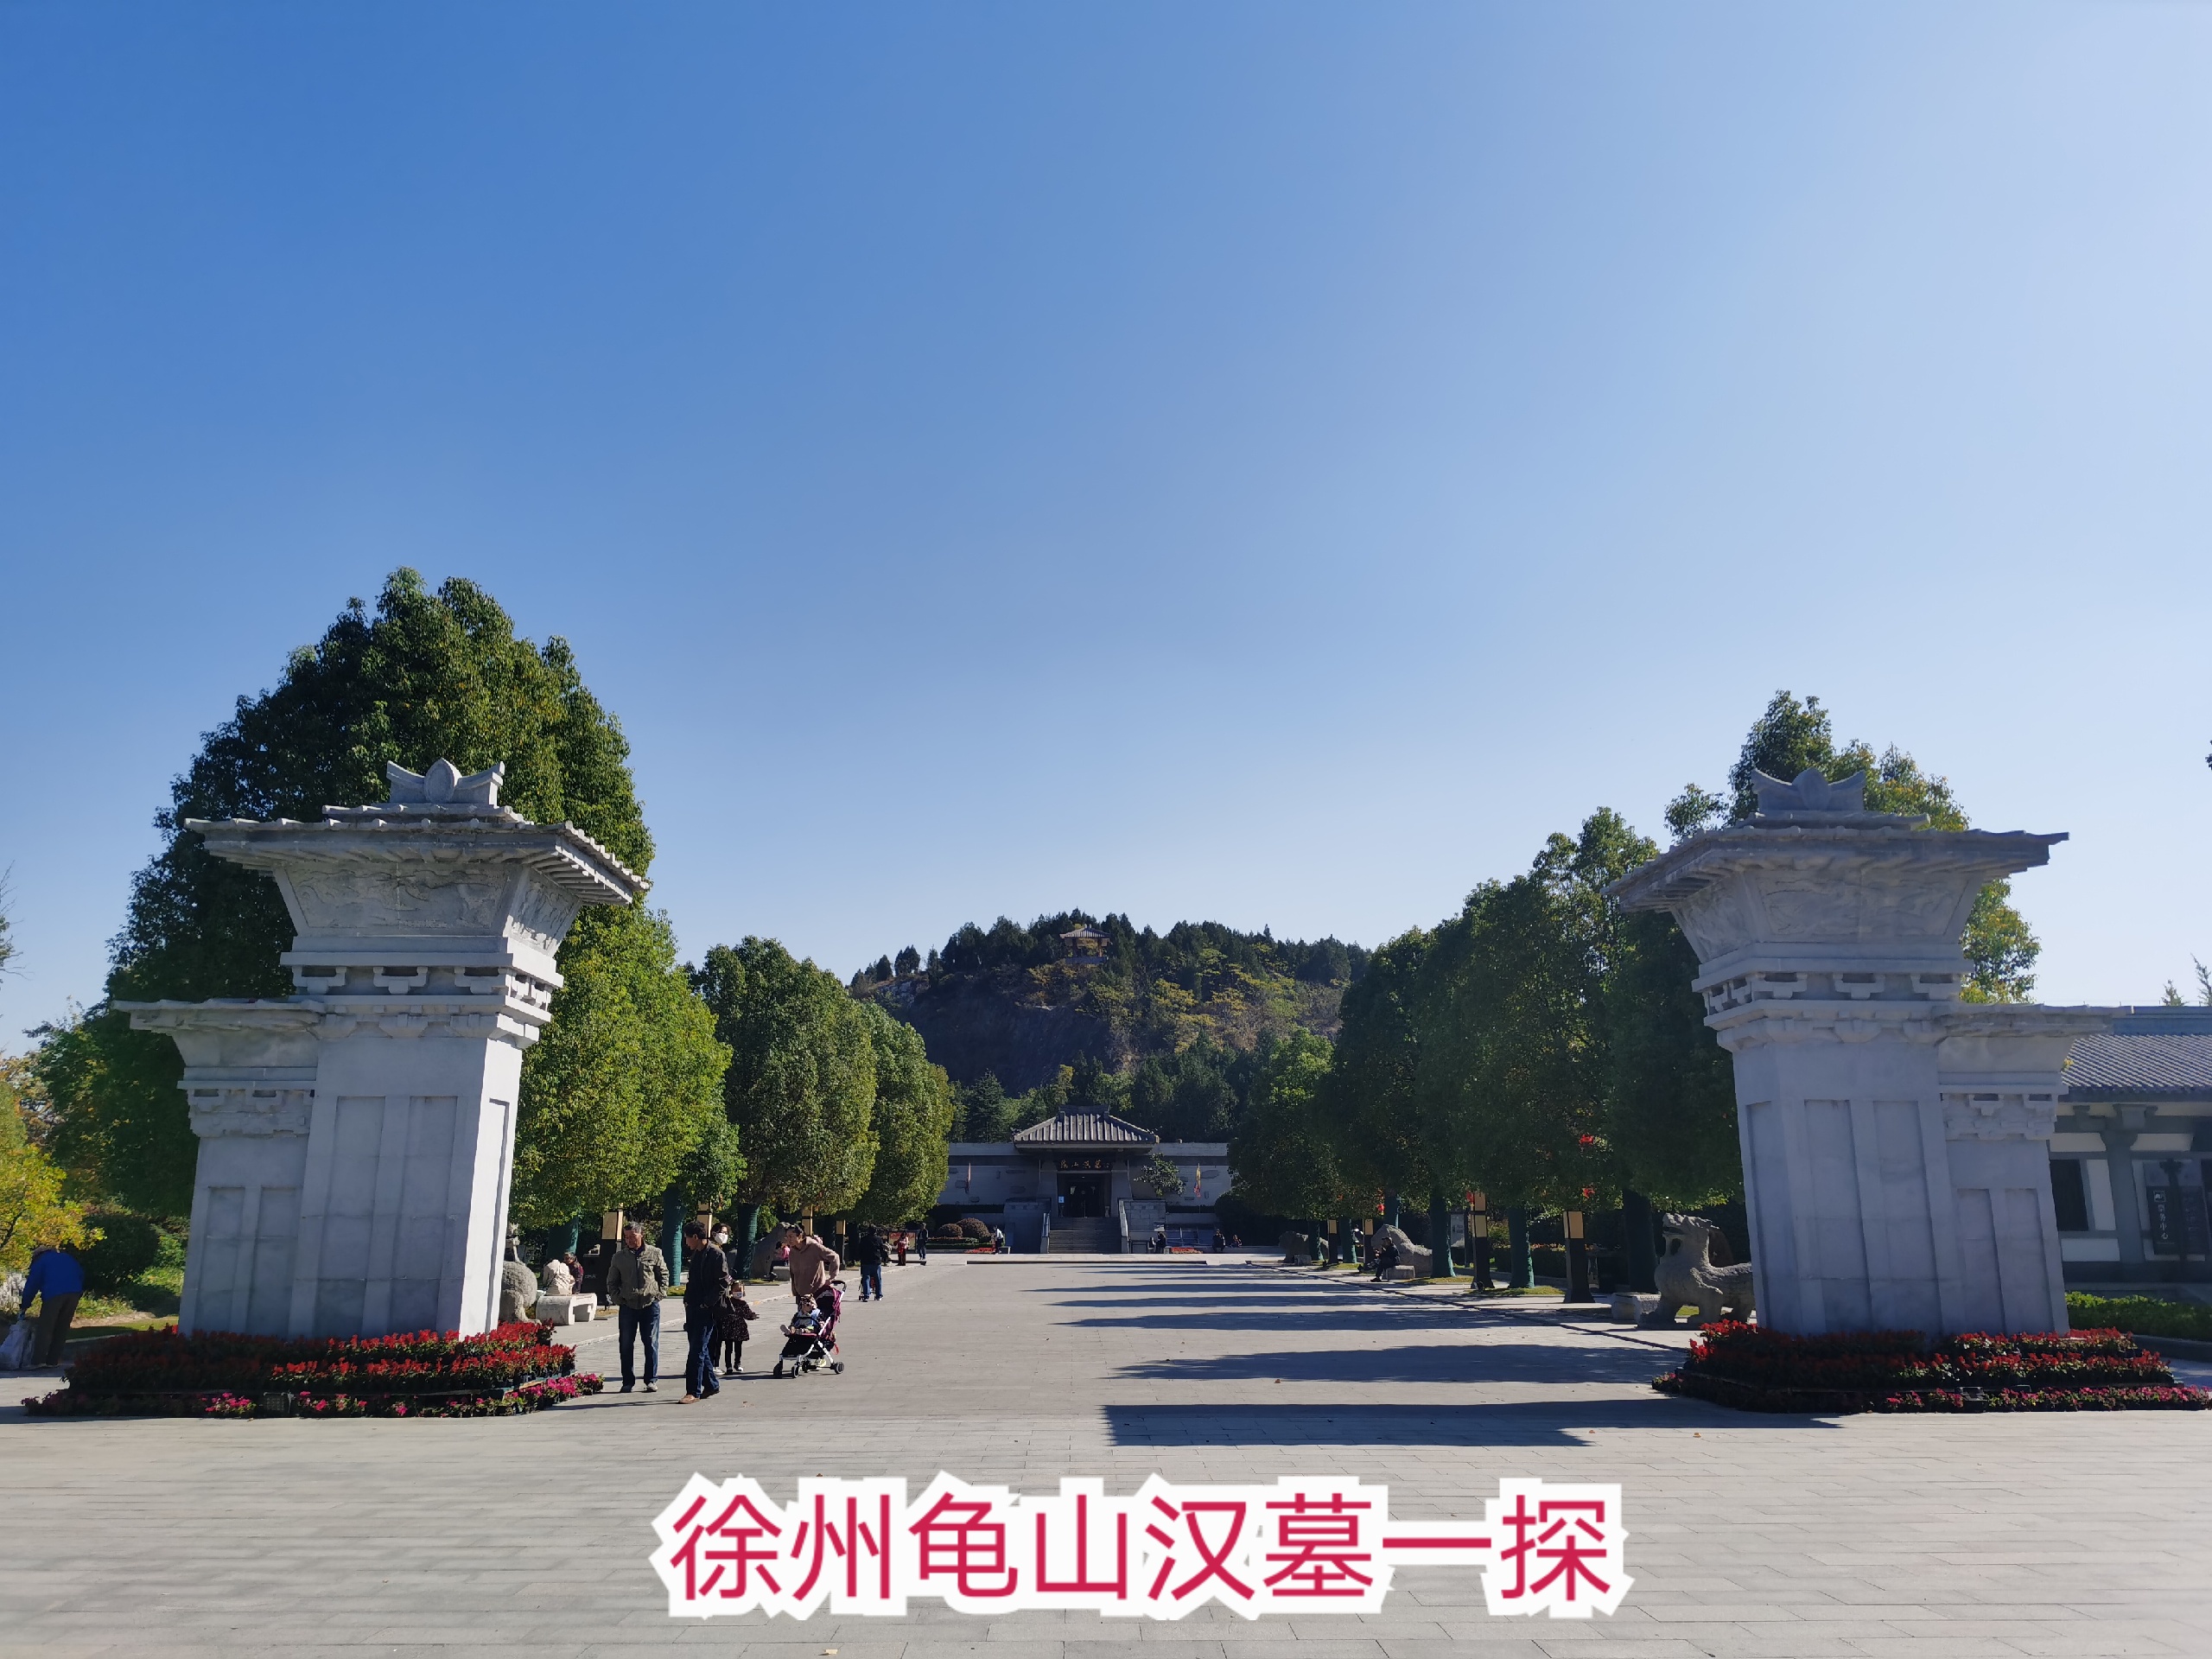 徐州龟山汉墓︱探墓之行 被低估的景点